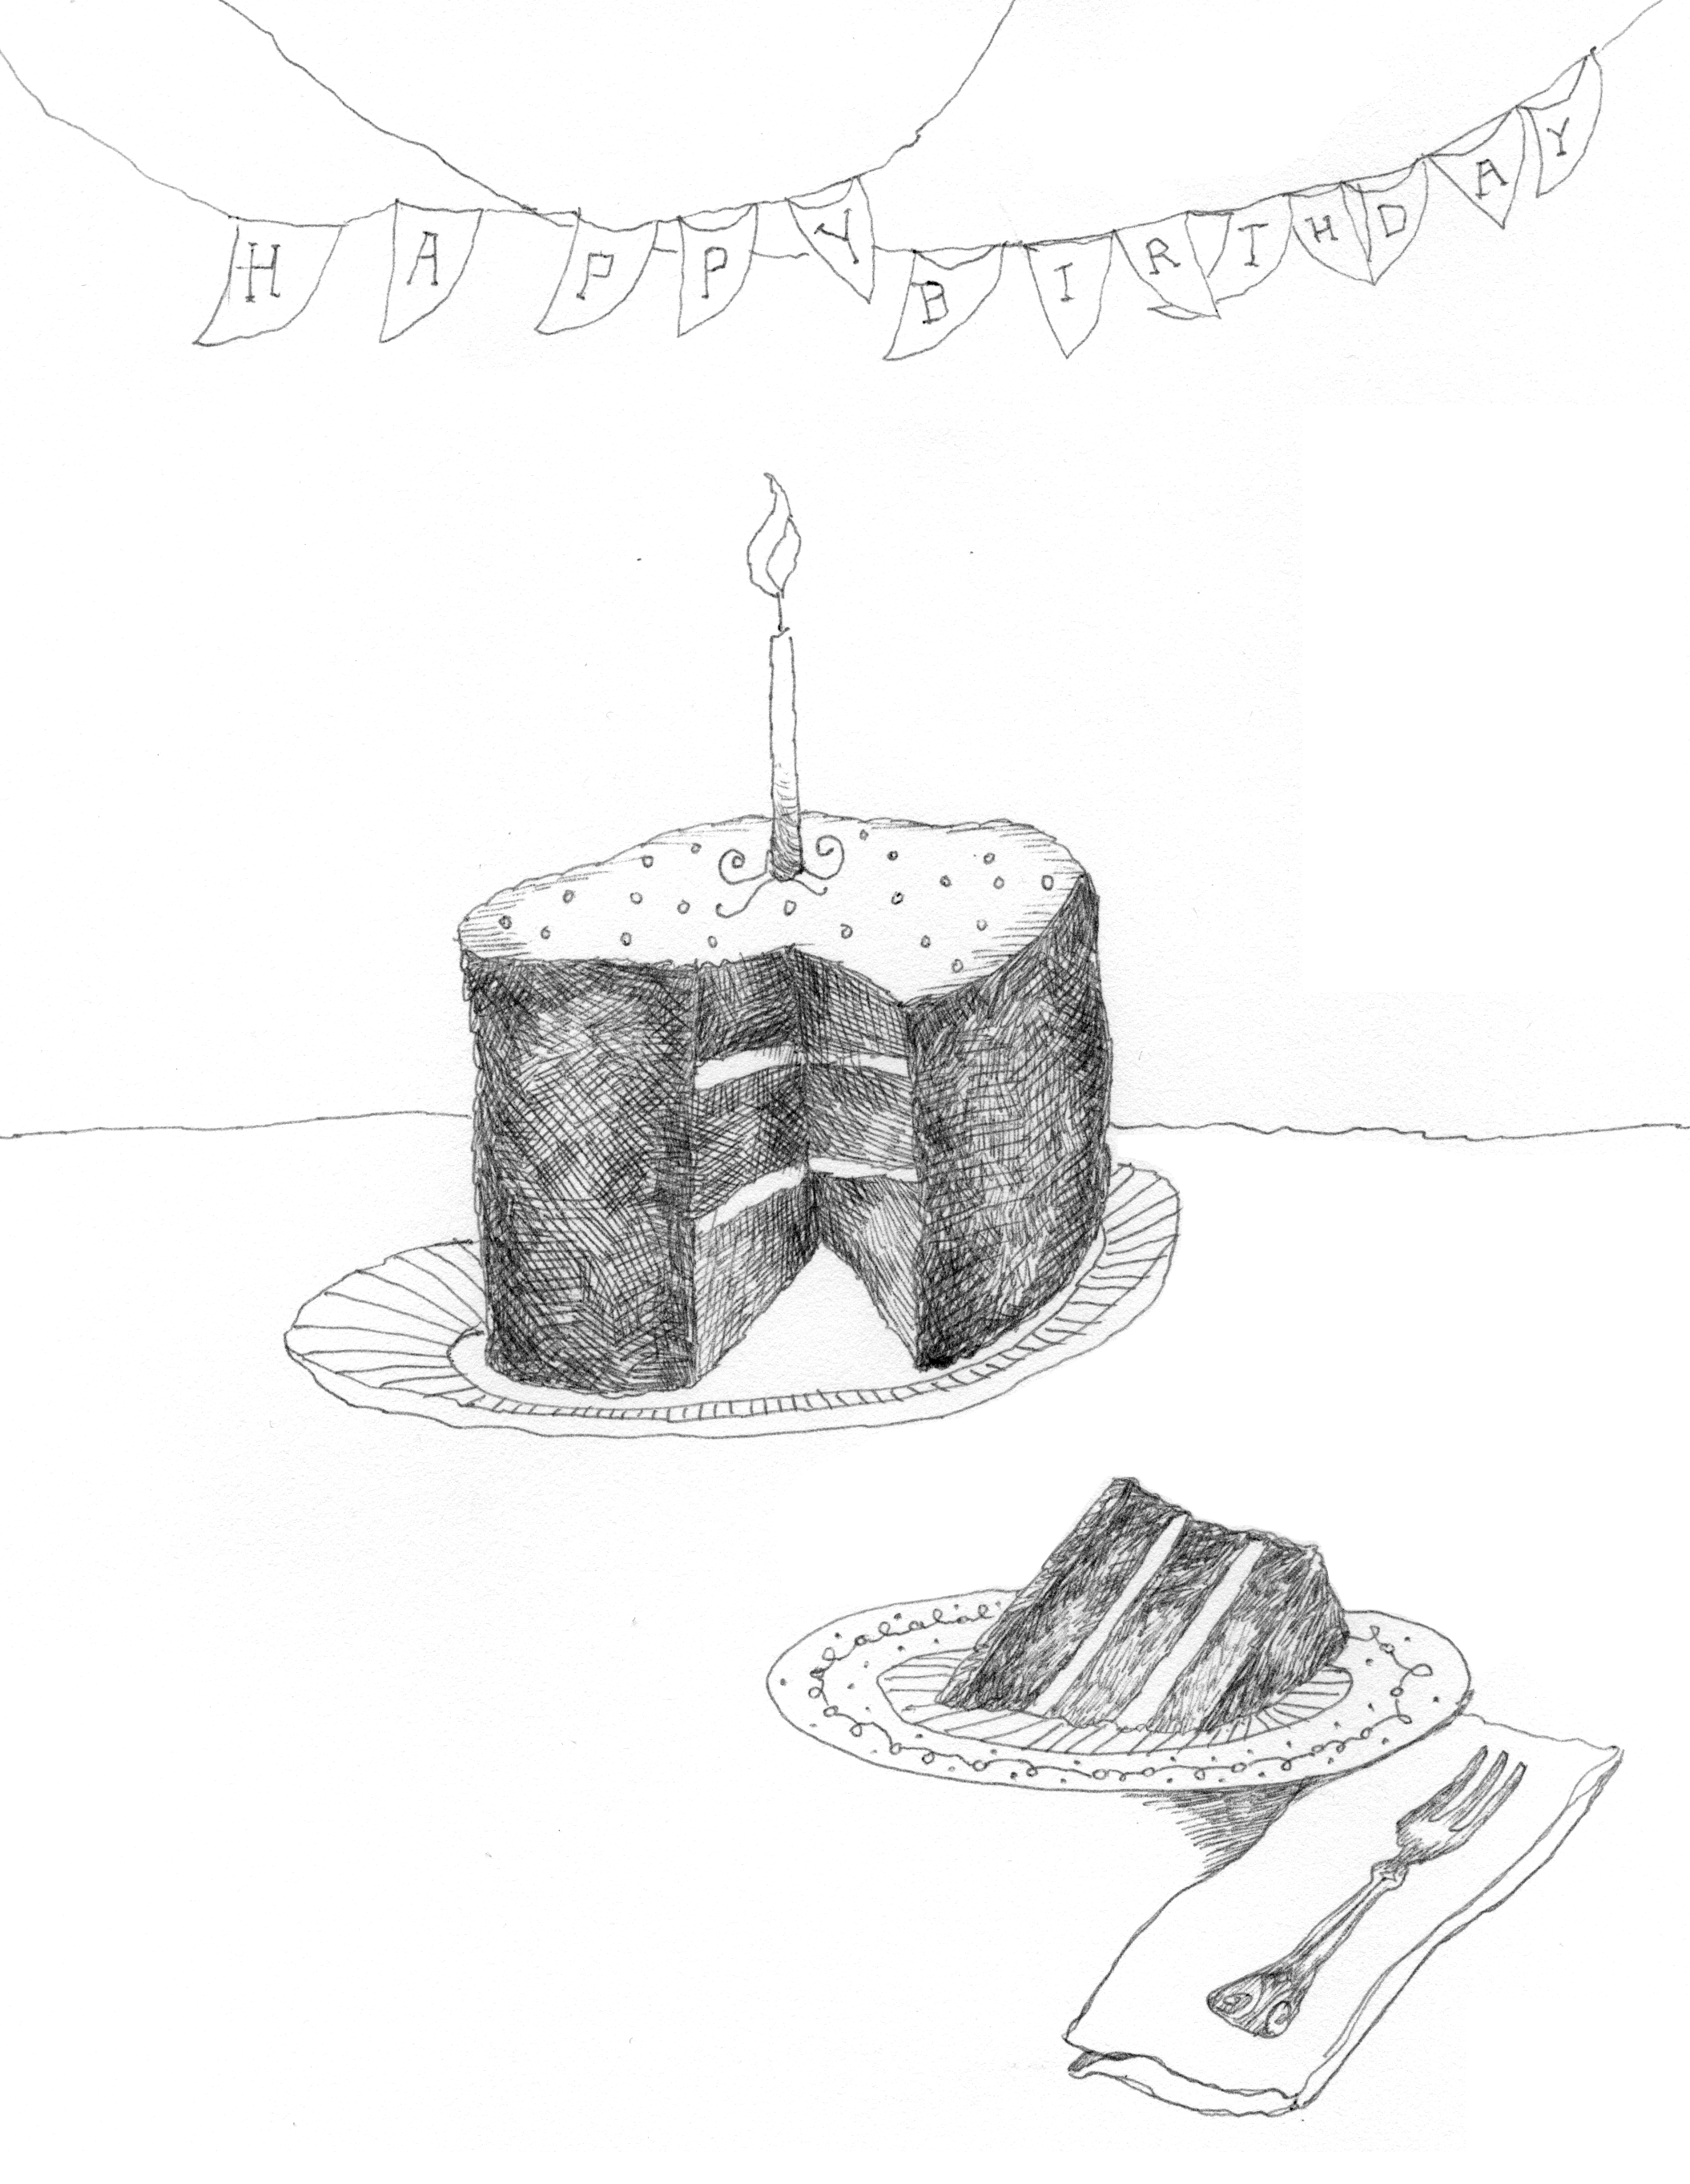 Happy Birthday Cake pen & ink illustration